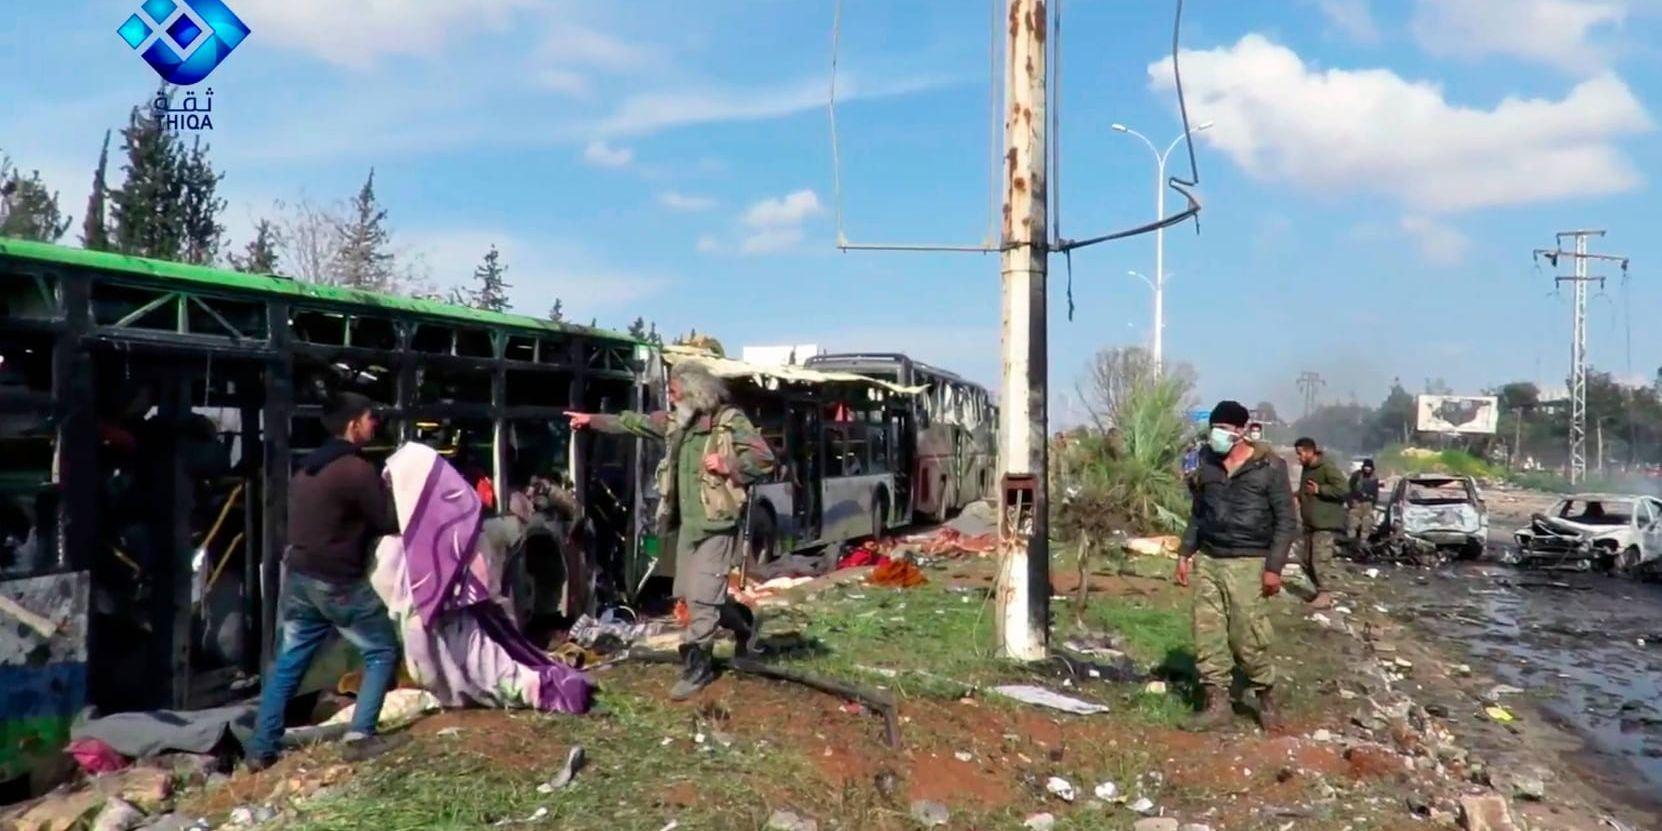 Nästan 70 personer av de som dödades i lördagens bombdåd var barn. Ombord på bussarna fanns människor som enligt en överenskommelse skulle få lämna belägrade städer i Syrien.